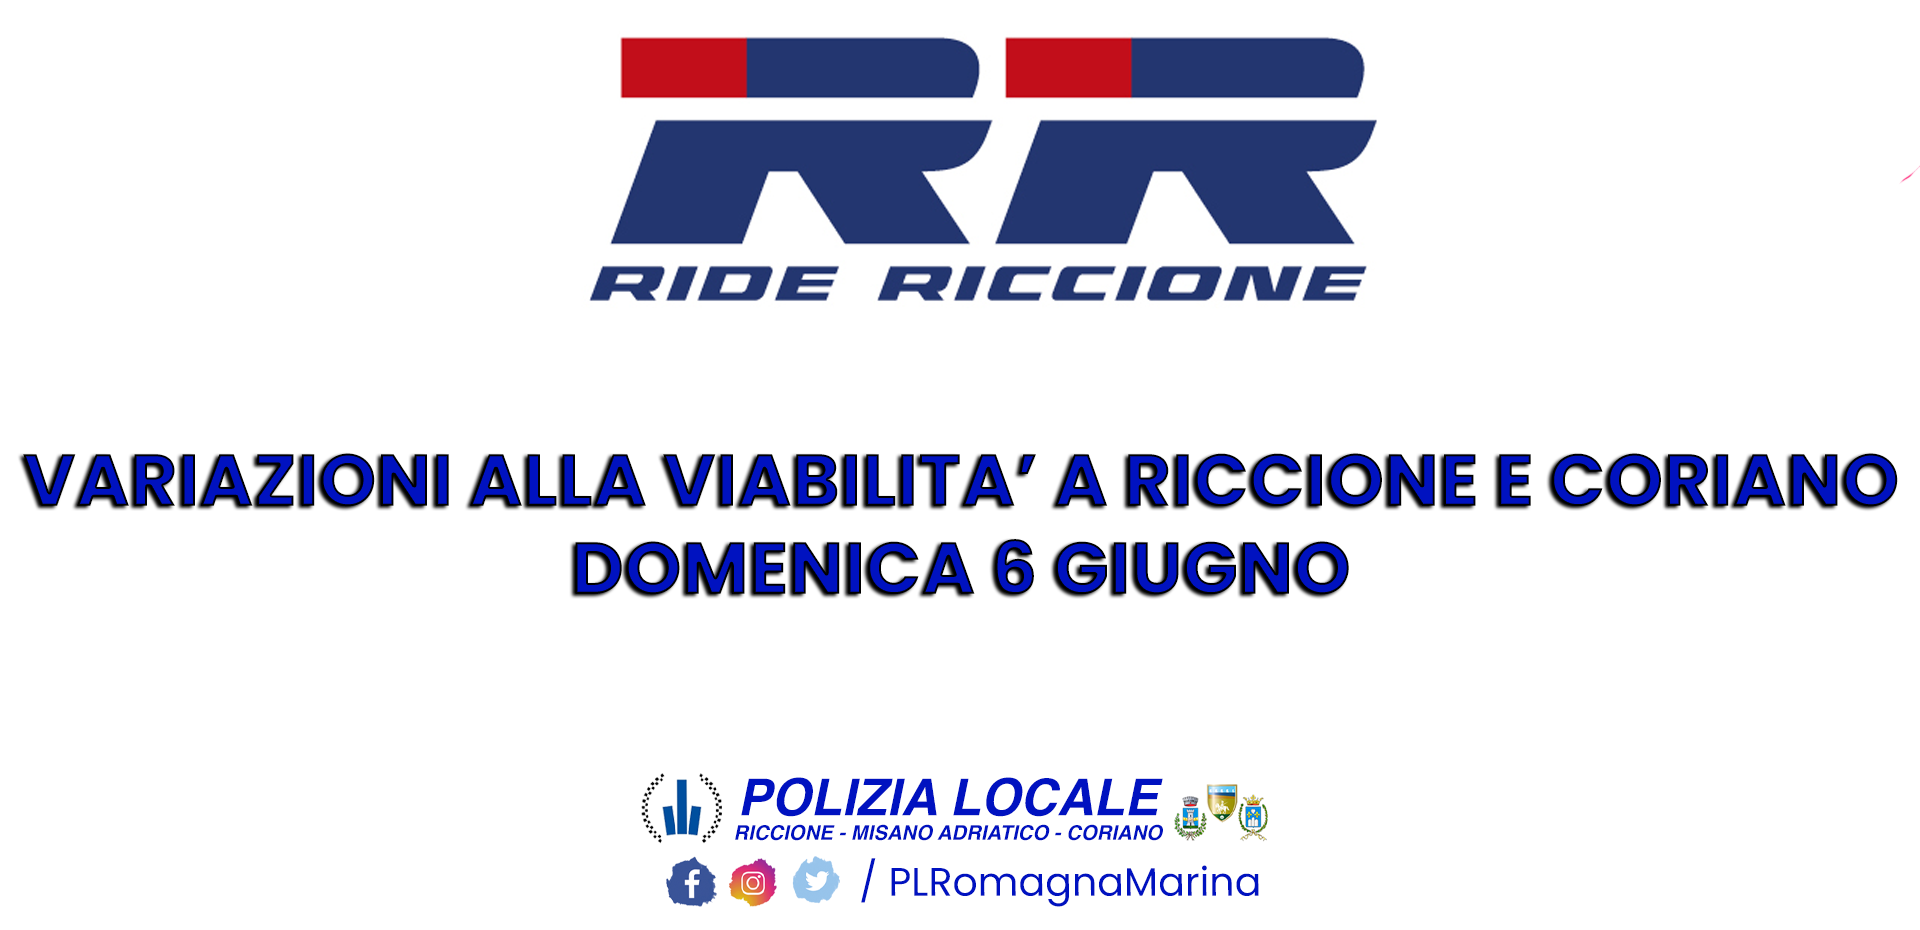 Riccione Ride Week